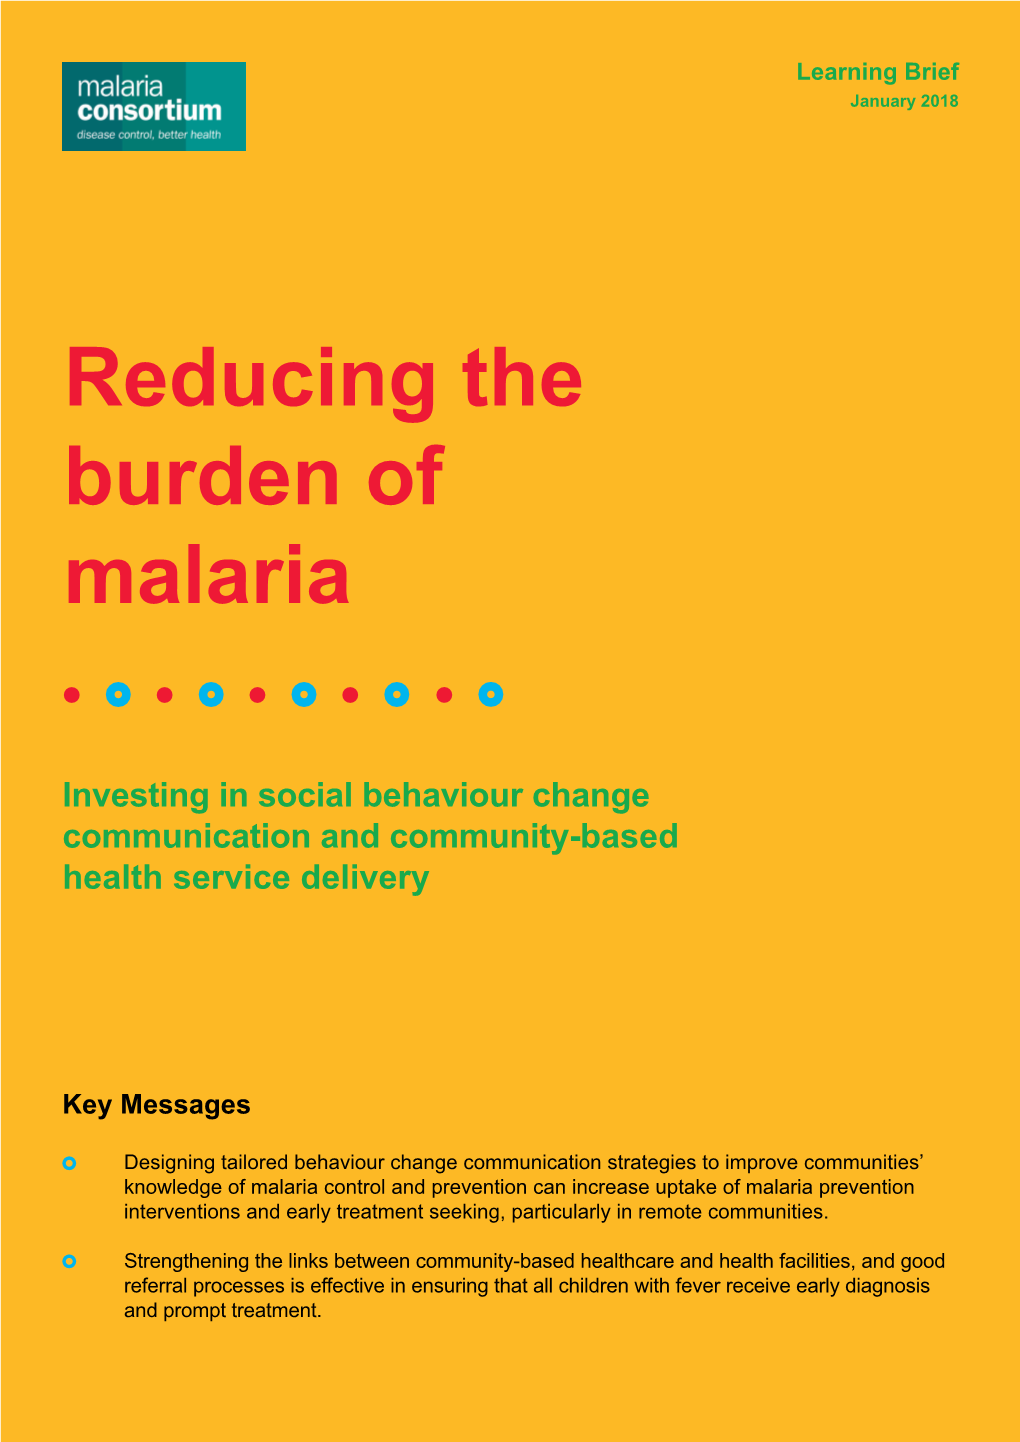 Reducing the Burden of Malaria